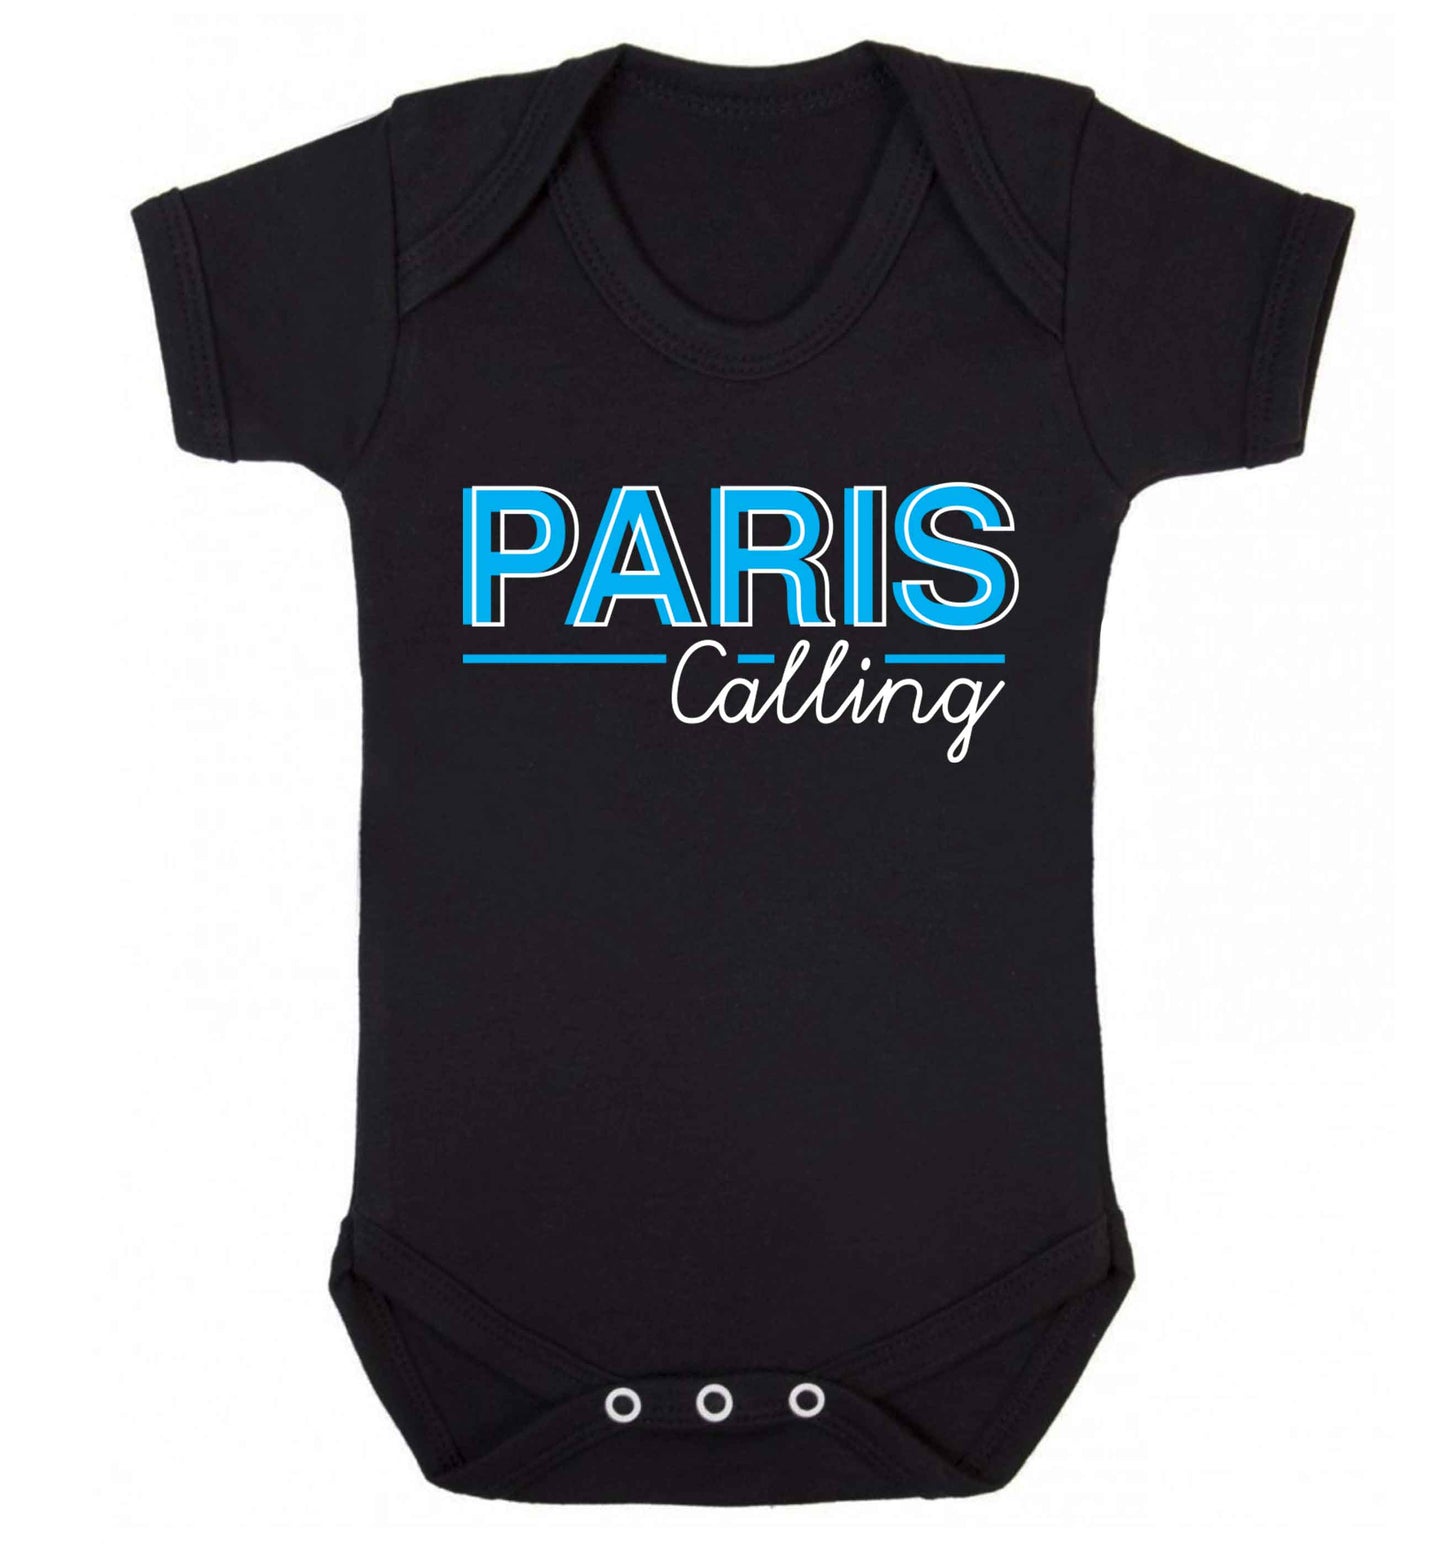 Paris calling Baby Vest black 18-24 months